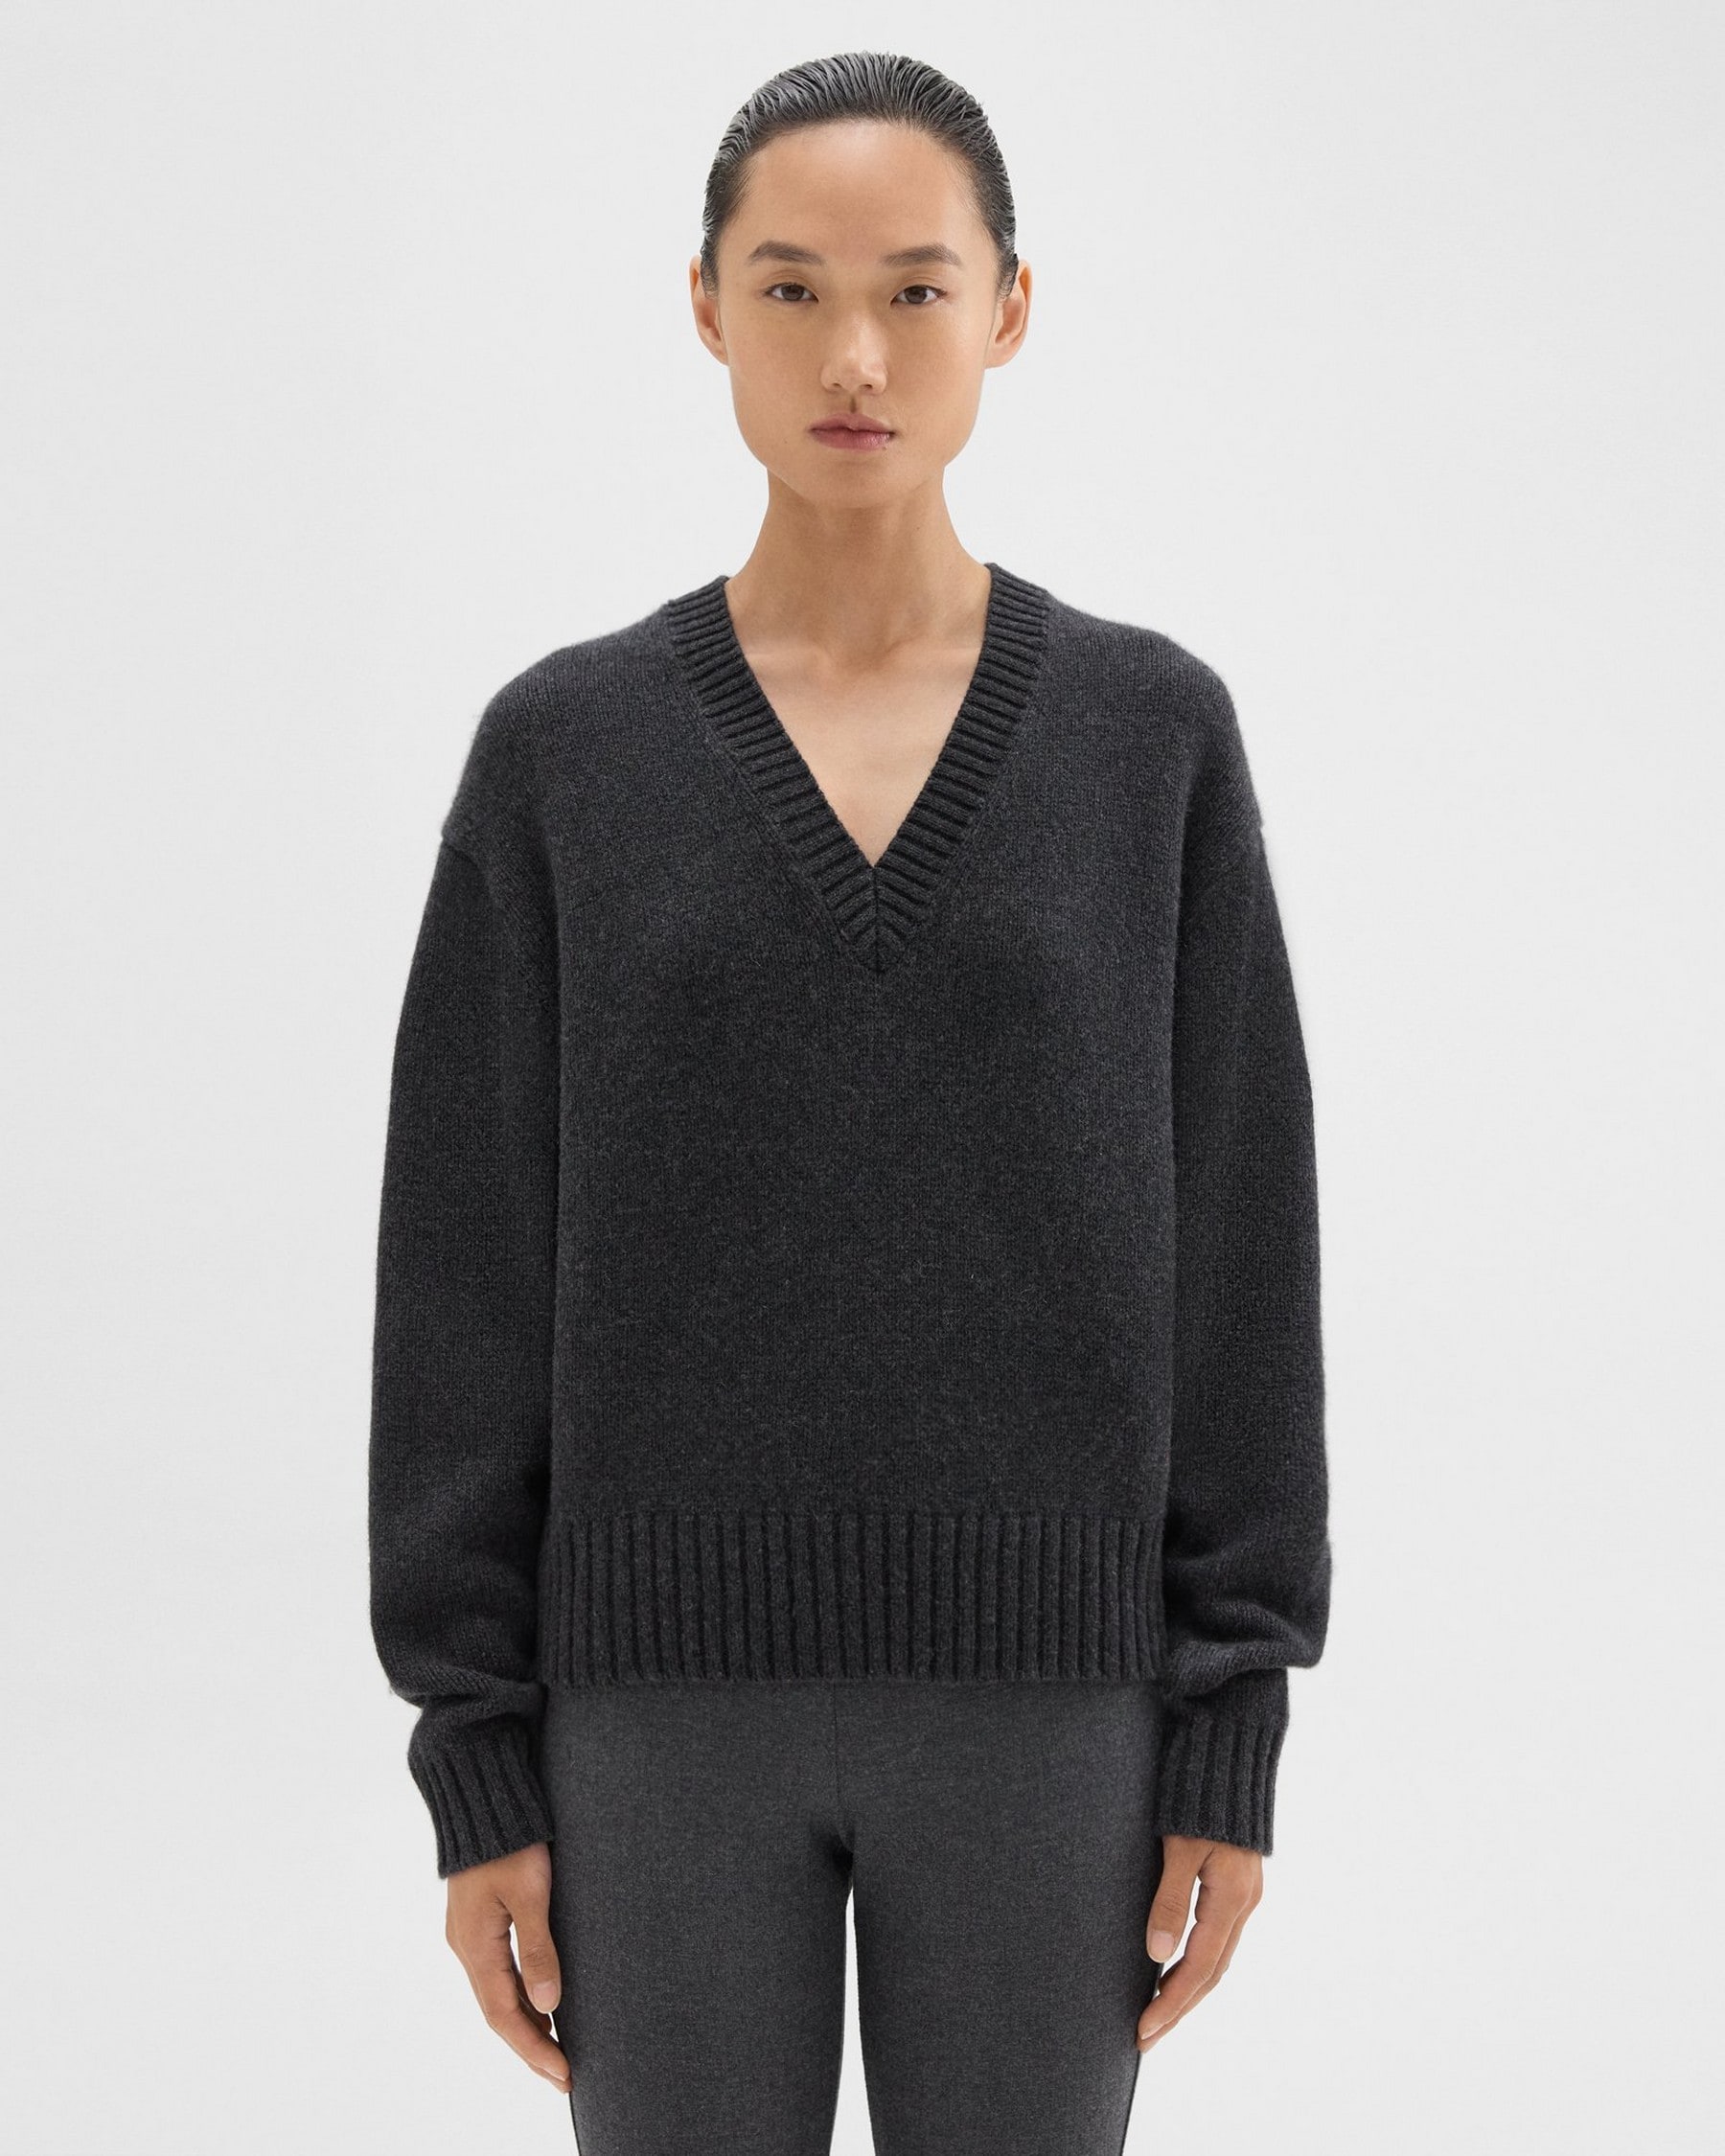 띠어리 Theory V-Neck Sweater in Recycled Wool-Cashmere,PESTLE MELANGE